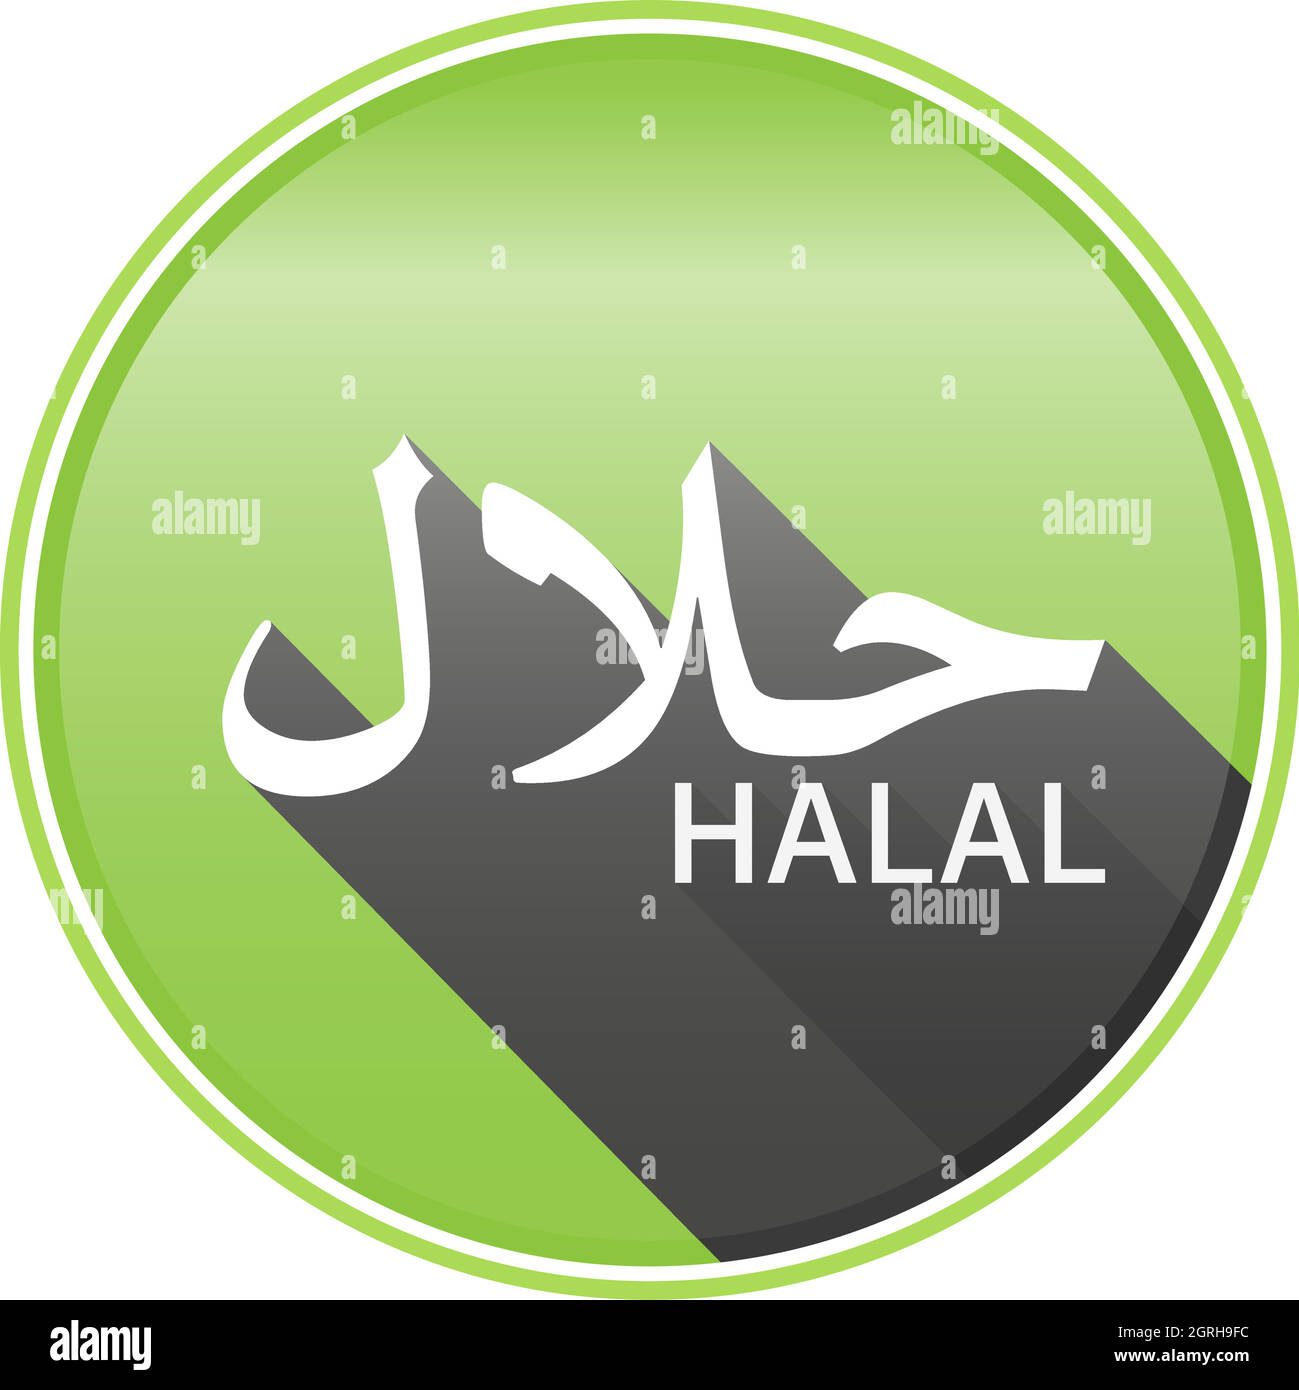 Adesivo HALAL rotondo verde o etichetta con scritta arabica per parola halal Illustrazione Vettoriale